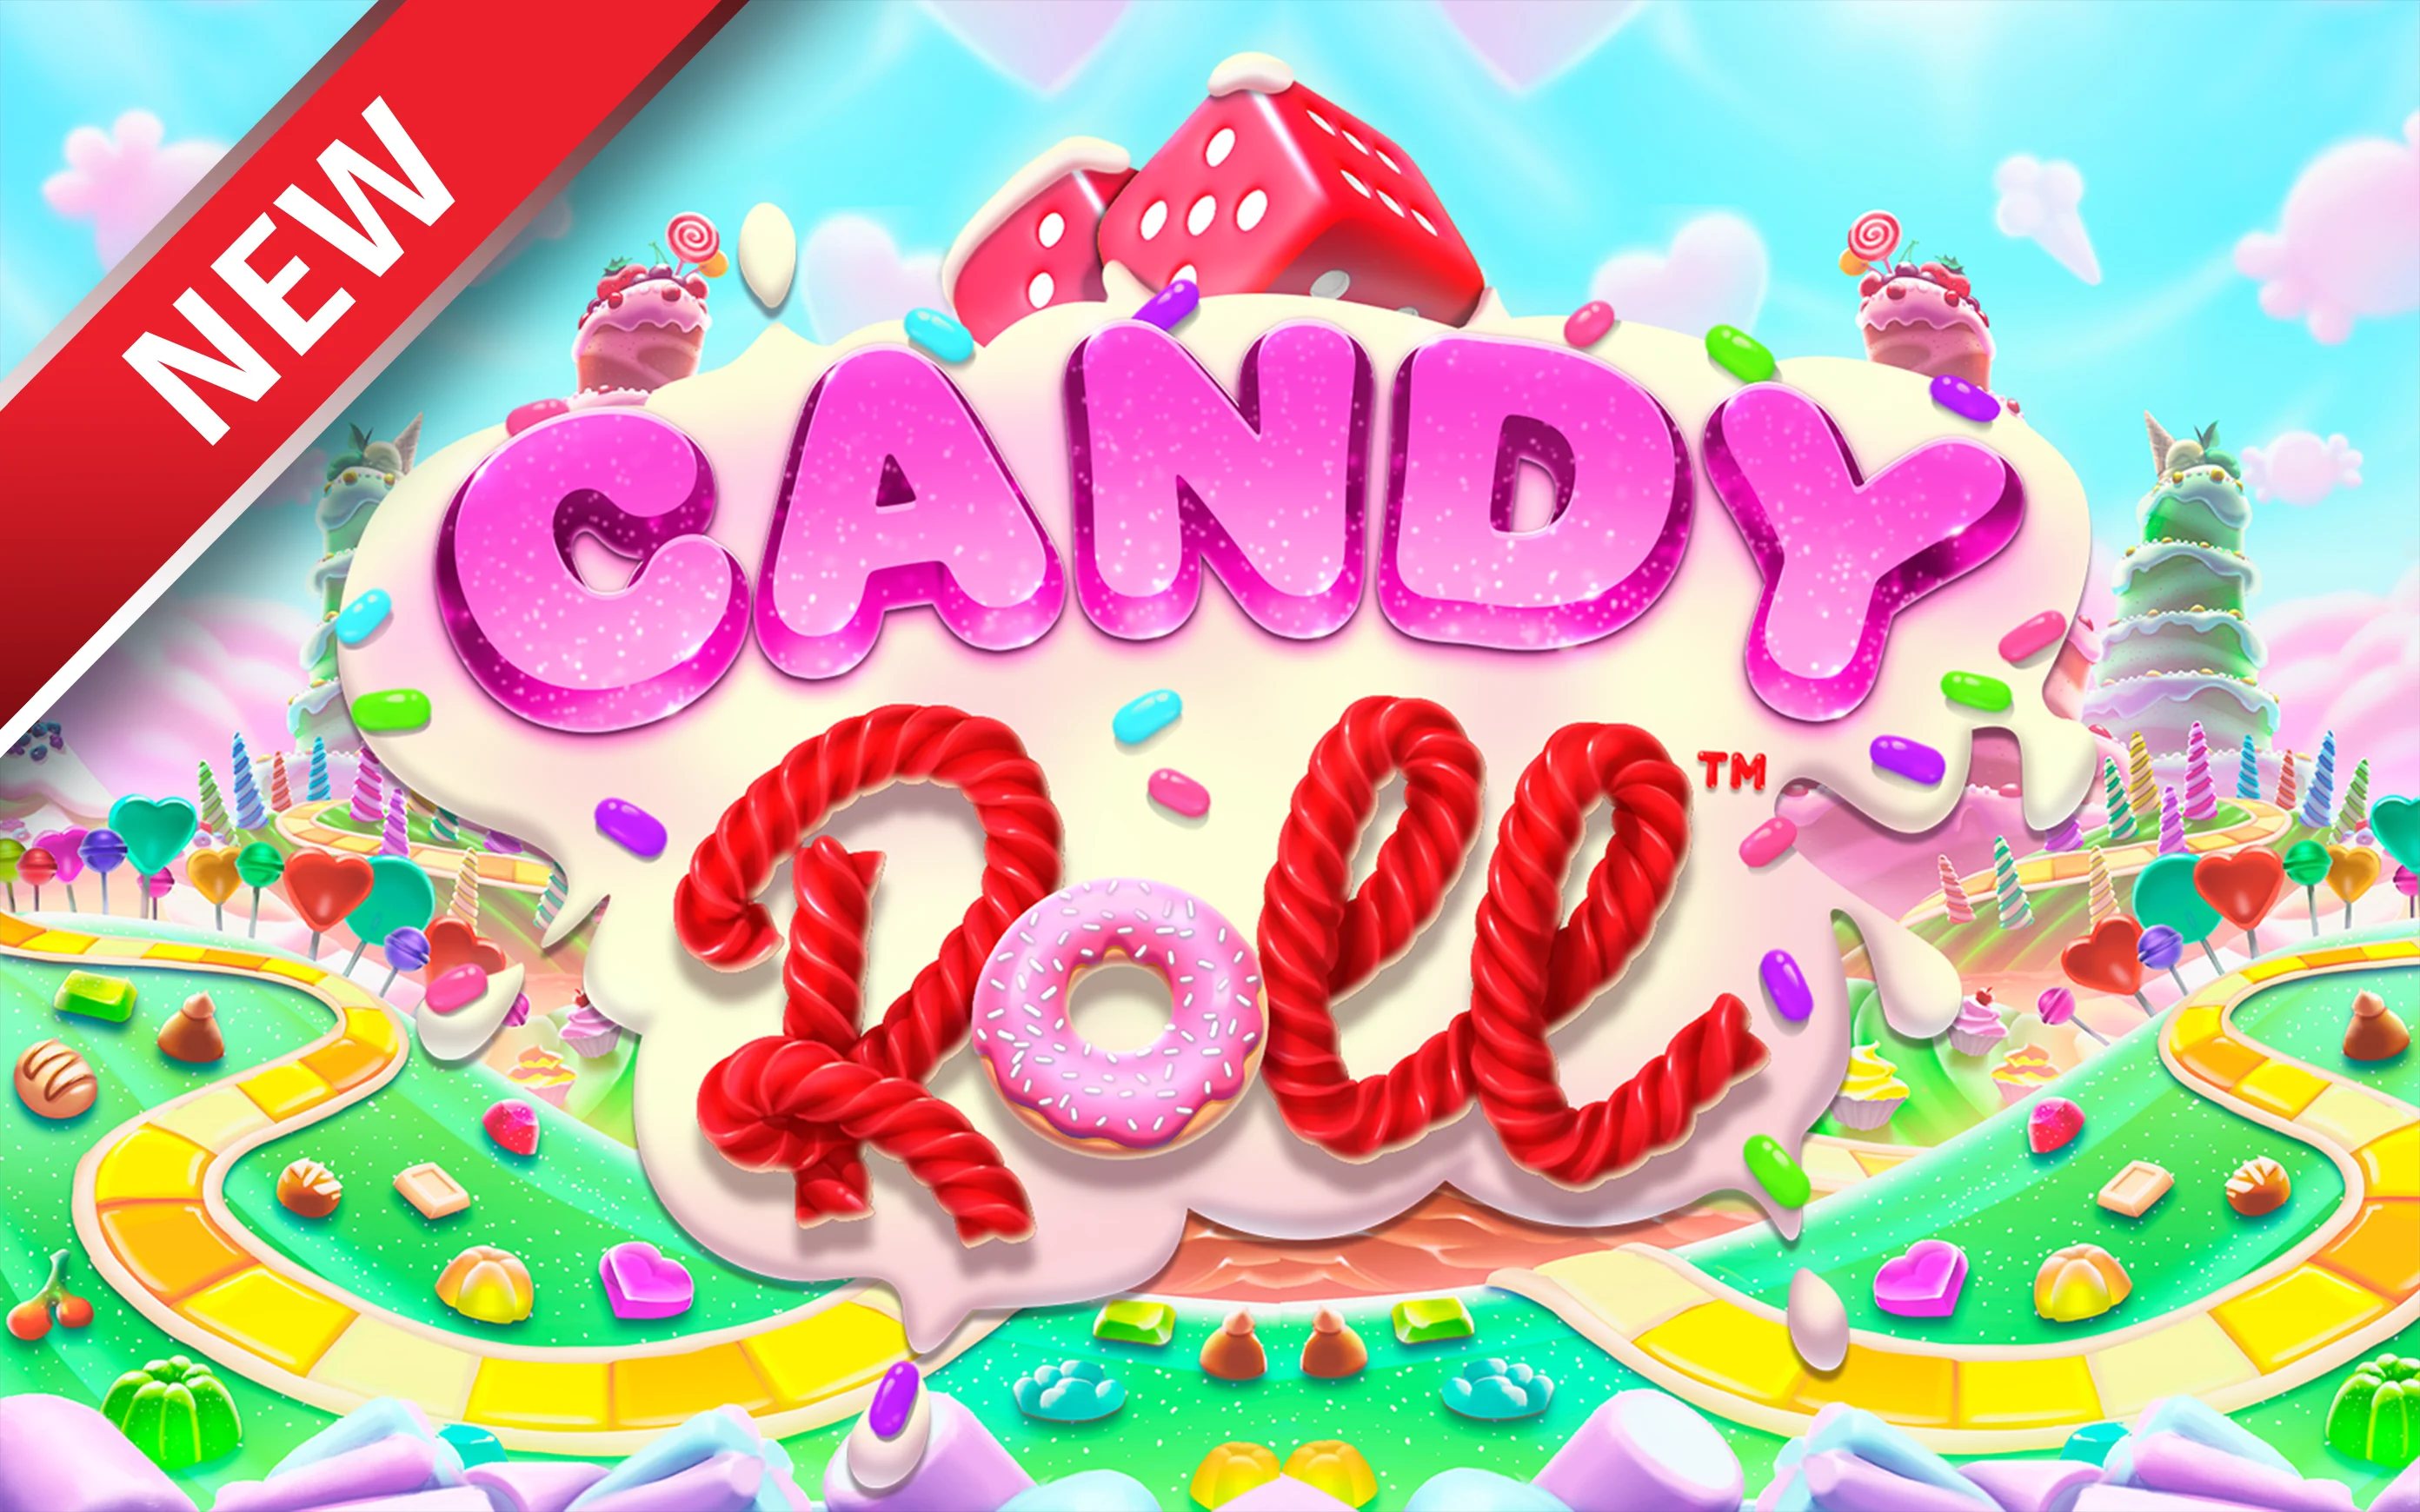 Juega a Candy Roll™ en el casino en línea de Starcasino.be